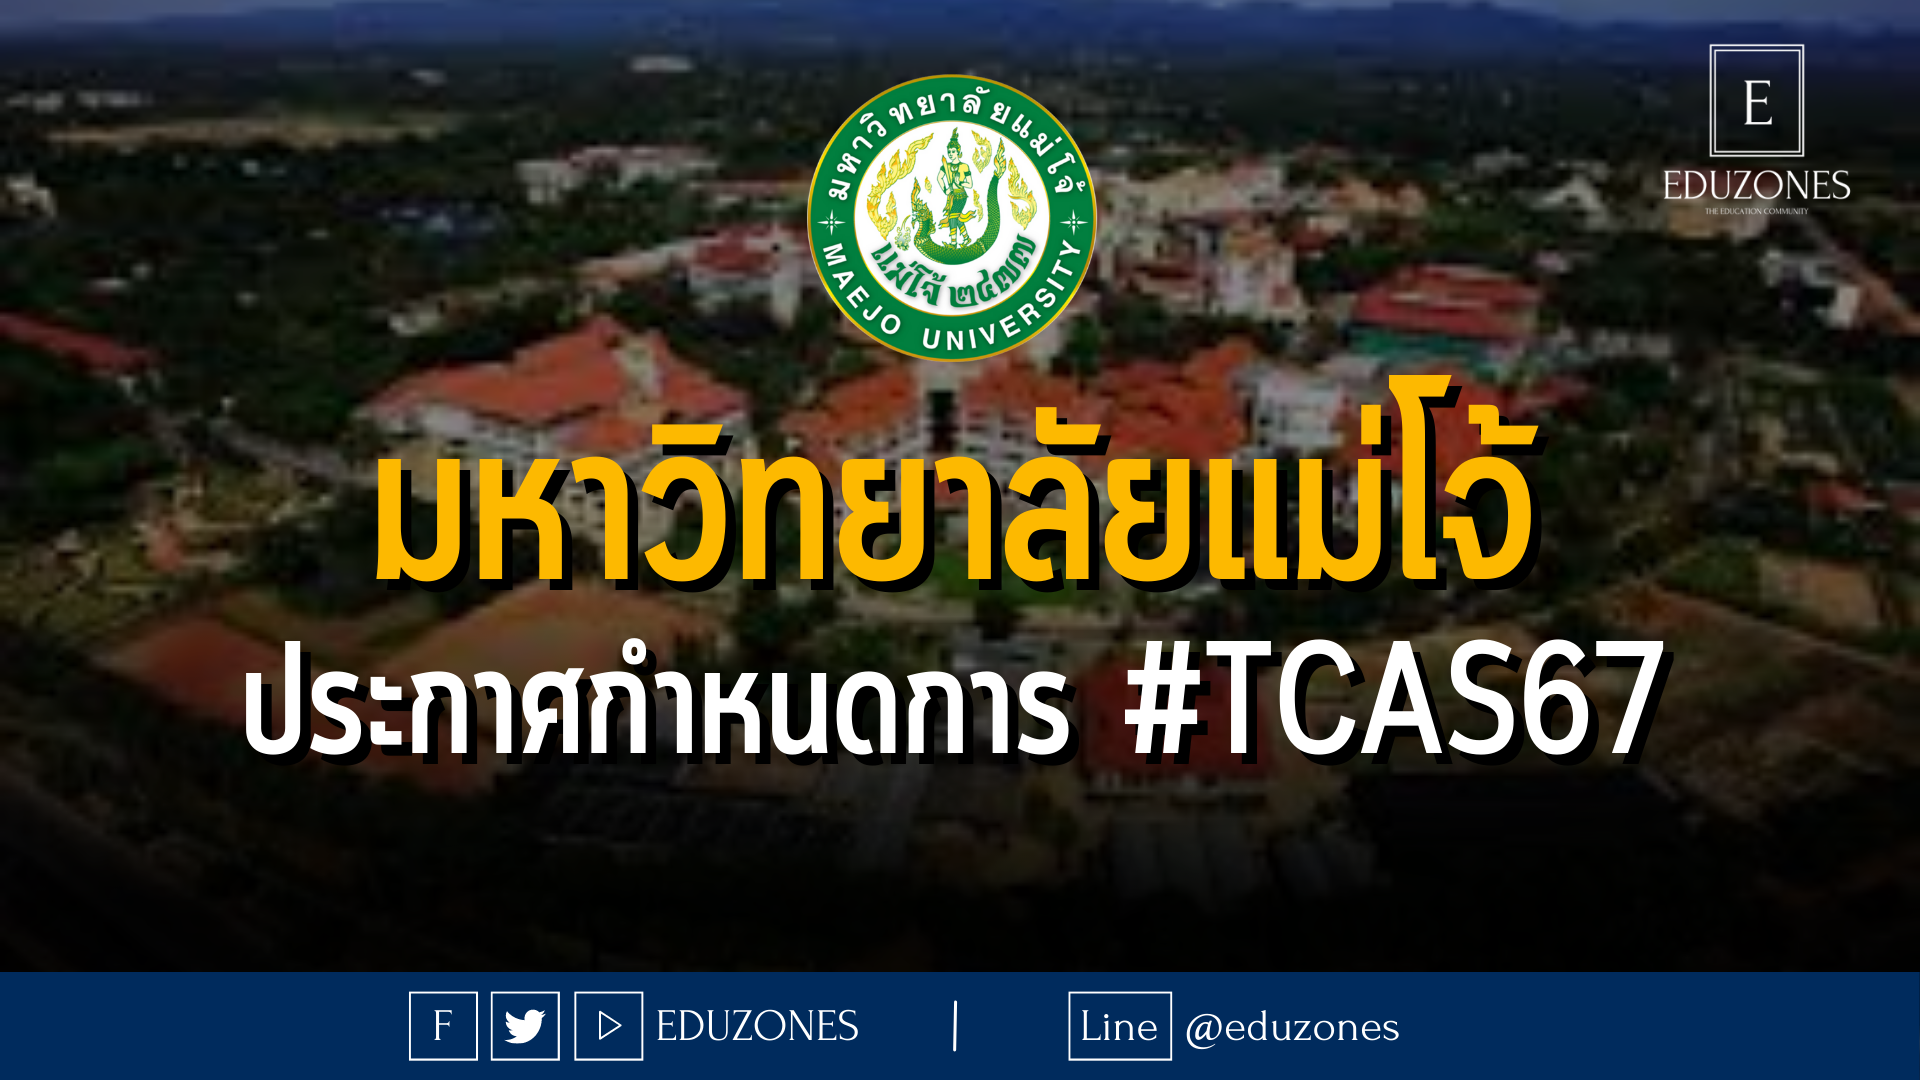 มหาวิทยาลัยแม่โจ้ ประกาศกำหนดการ #TCAS67 